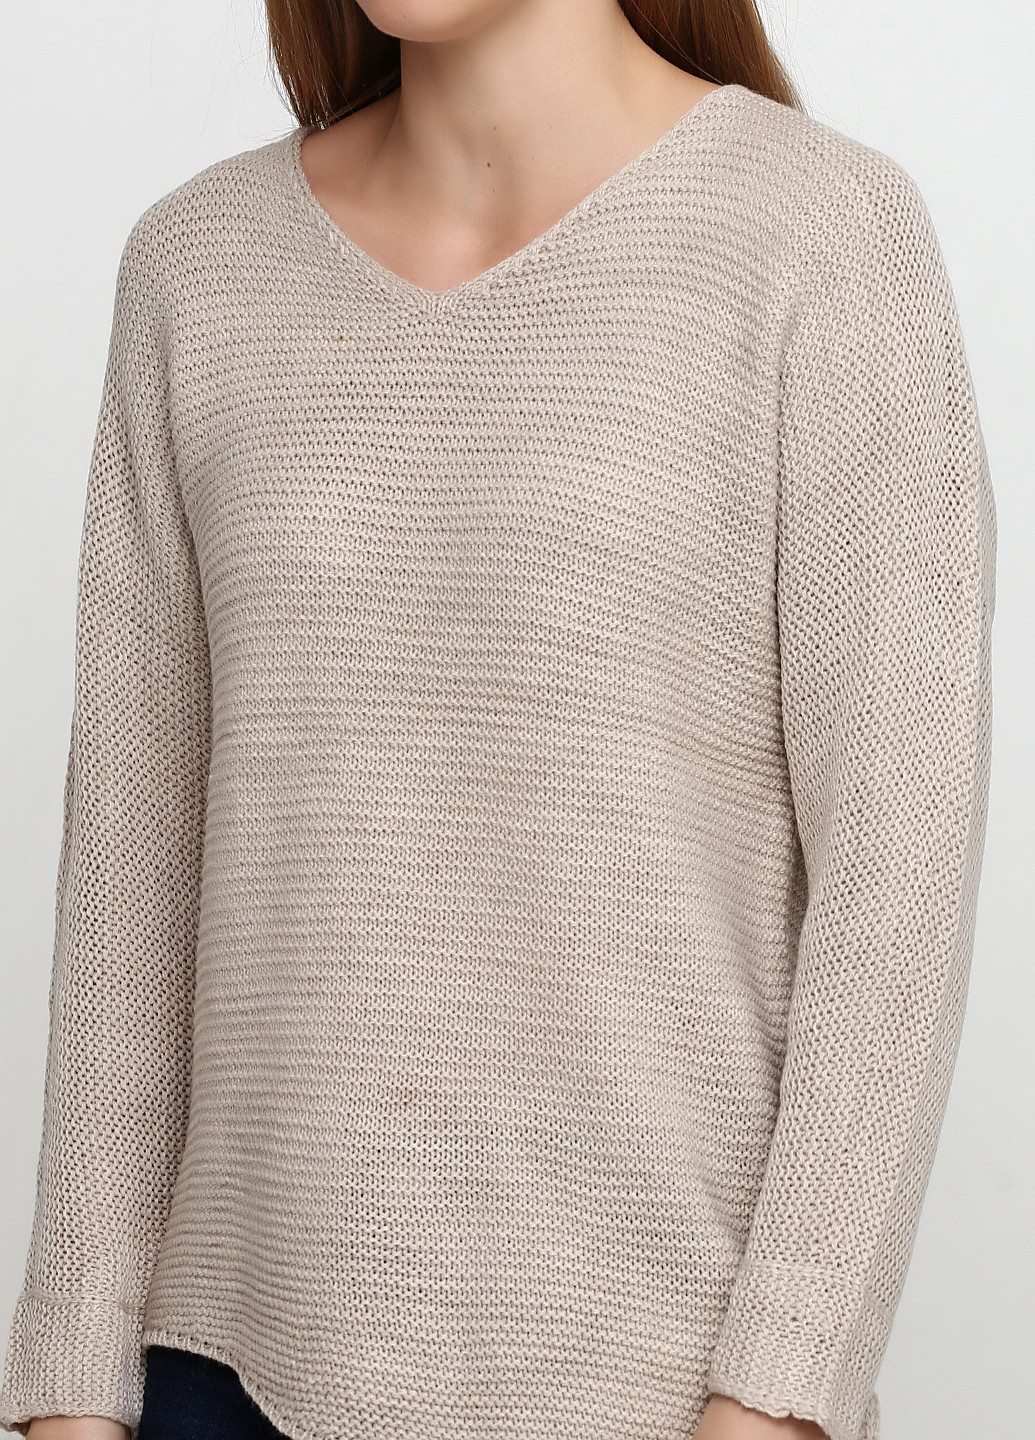 Песочный демисезонный пуловер пуловер Metin Triko